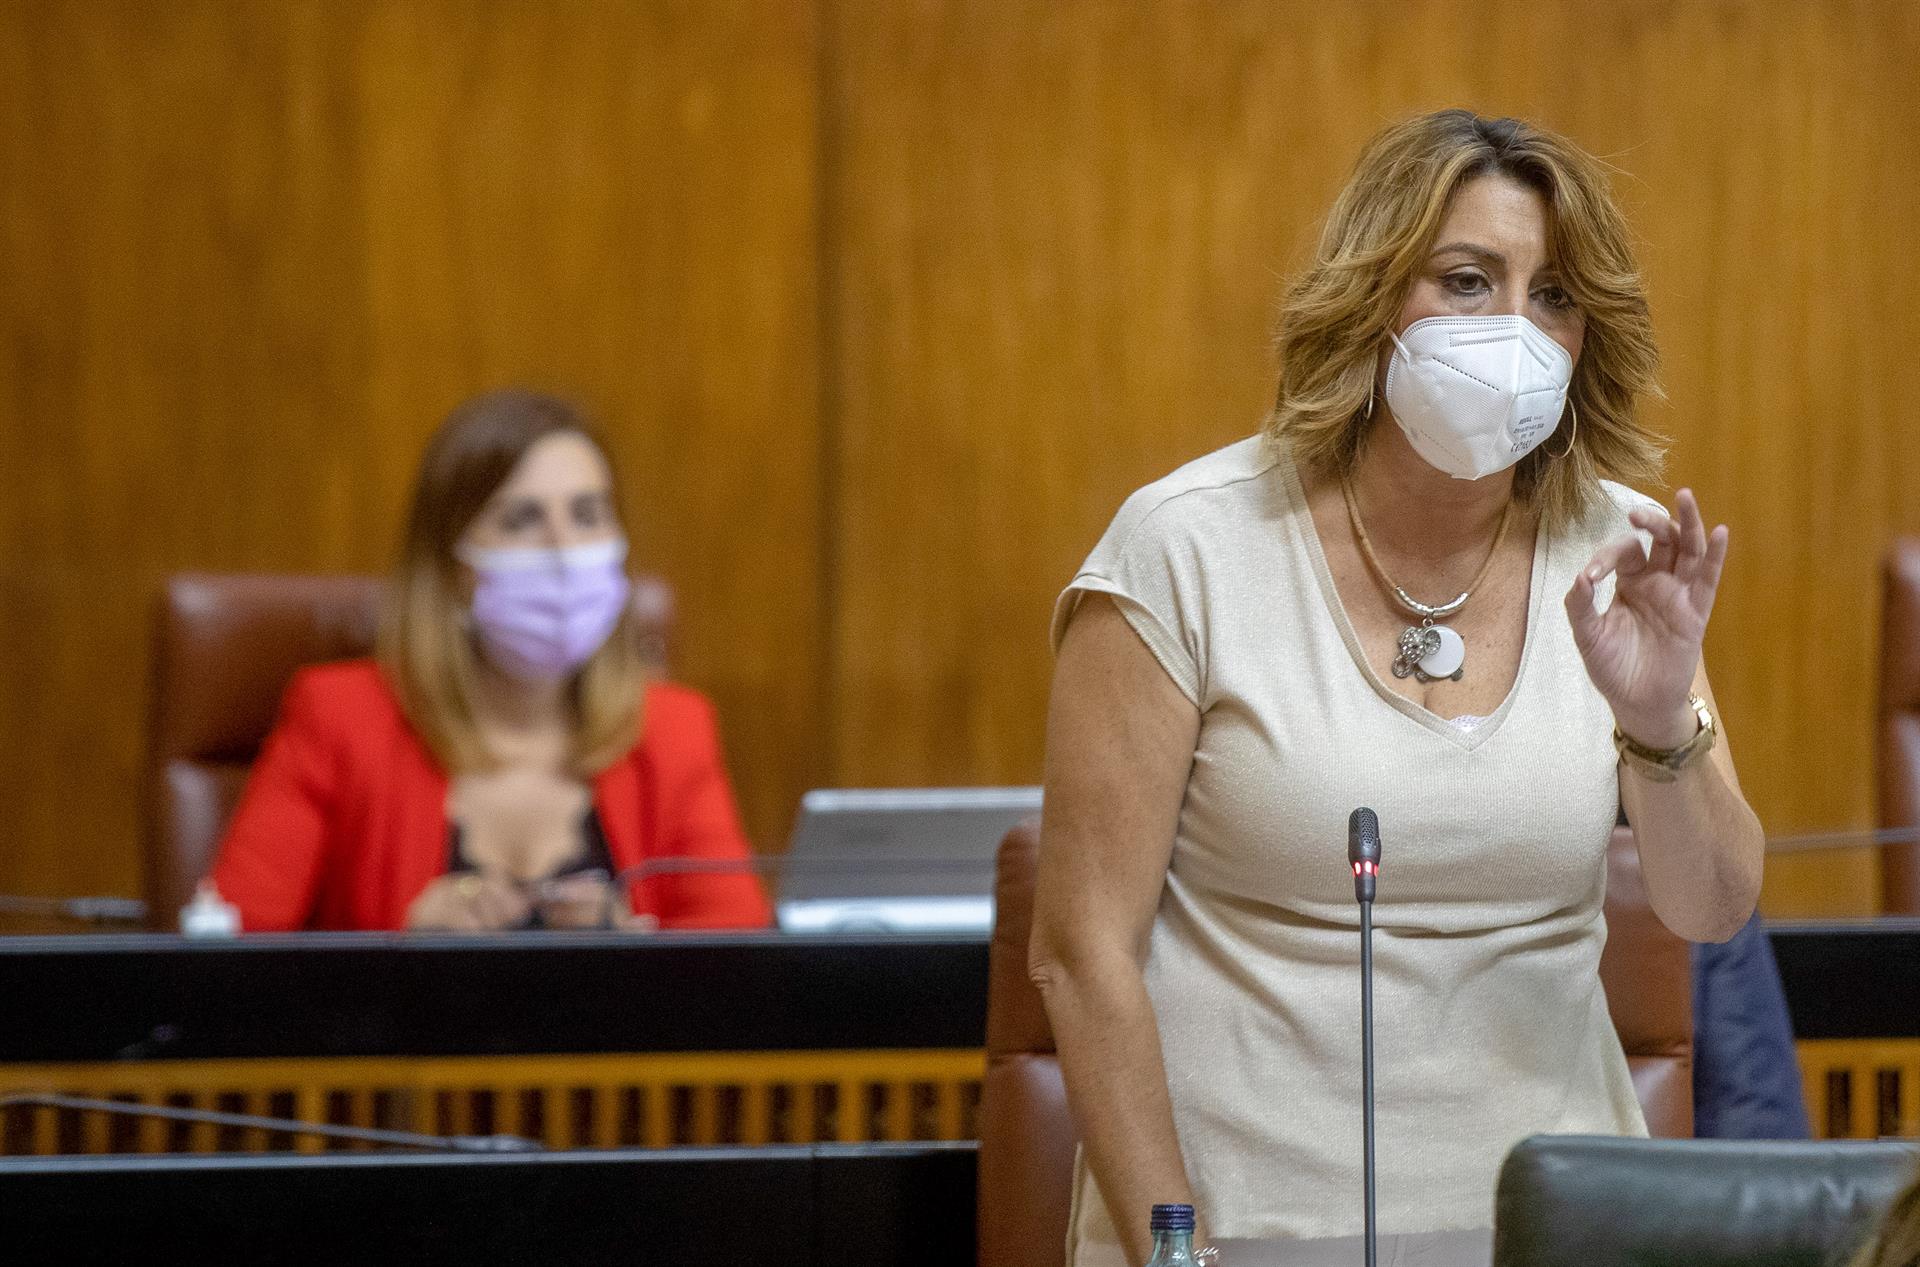 La comisión de la Faffe espera el próximo viernes la comparecencia de Susana Díaz tras citarla por tercera vez